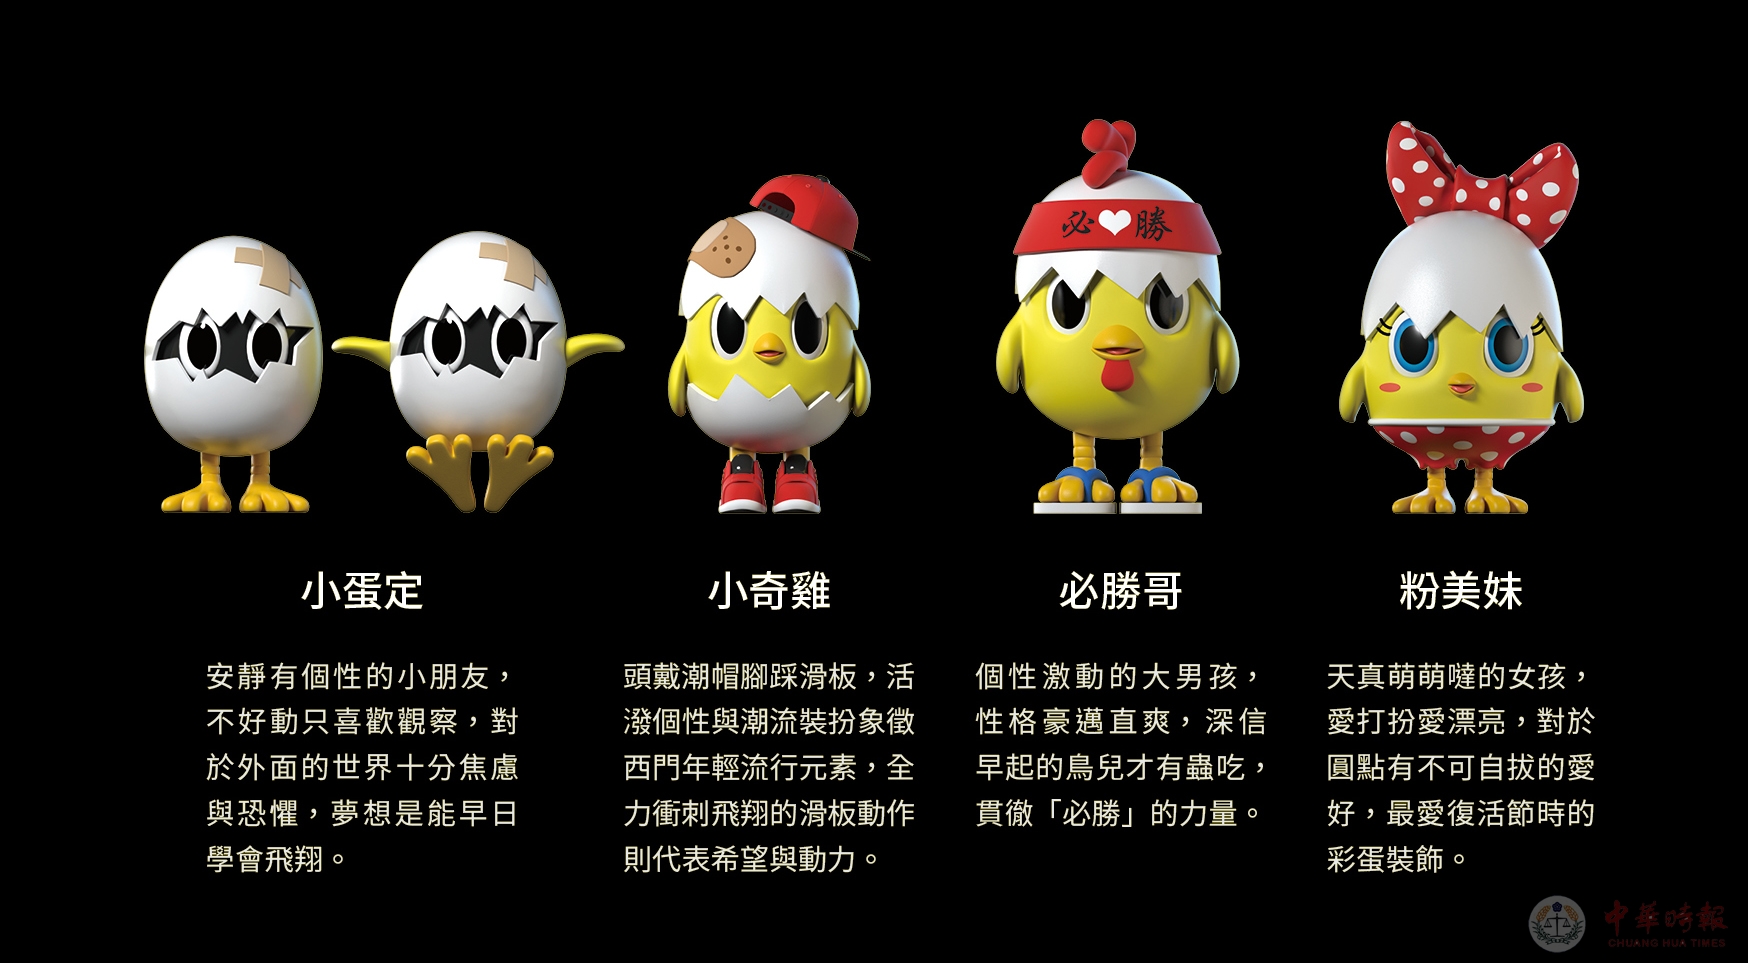 主灯“小奇鸡”已于25日架设完毕，各展区也陆续完工。1月26日，台北市市长柯文哲主持了台北灯节造型公布记者会，首度了曝光全灯区的模拟展演影片。